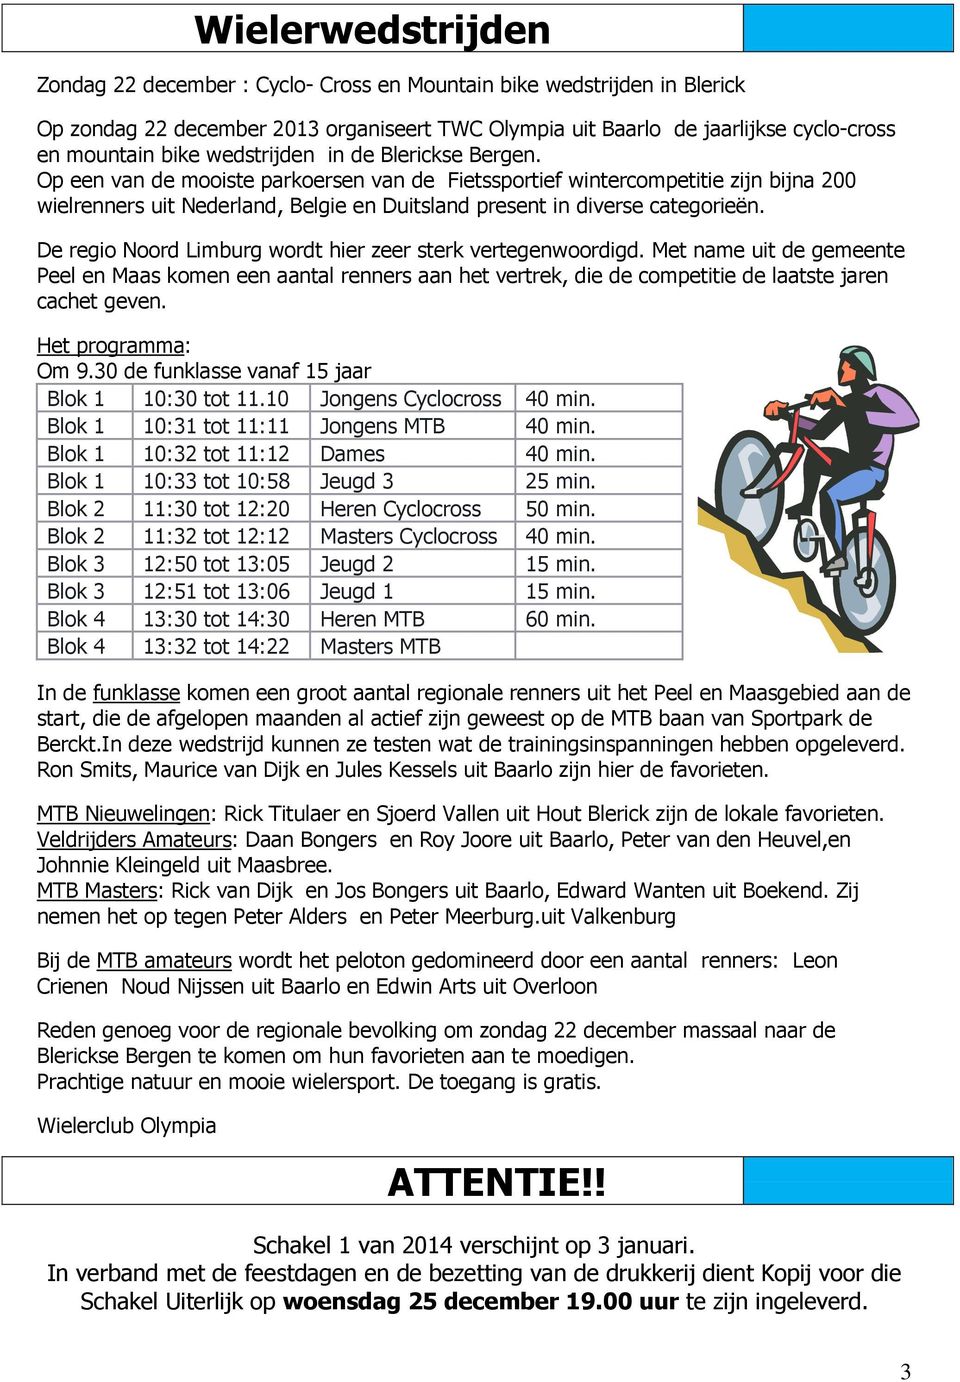 De regio Noord Limburg wordt hier zeer sterk vertegenwoordigd. Met name uit de gemeente Peel en Maas komen een aantal renners aan het vertrek, die de competitie de laatste jaren cachet geven.